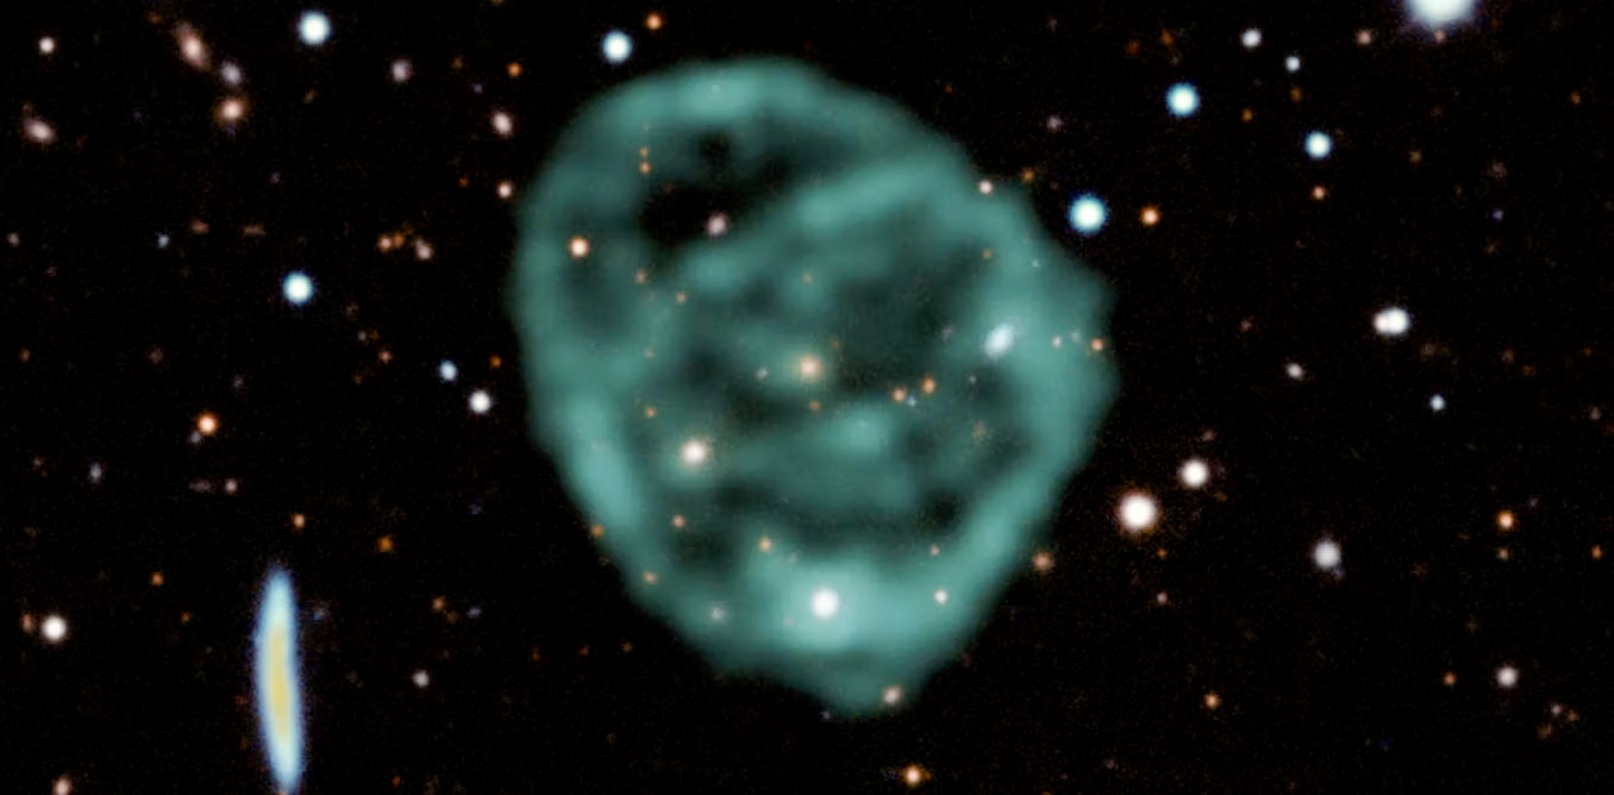 Les données du radiotélescope MeerKAT de SARAO (en vert) montrant un cercle&nbsp;radio superposées&nbsp;aux données dans le visible et le proche infrarouge du Dark Energy Survey permettent de former cette image en fausses couleurs. © J. English (U. Manitoba), EMU, MeerKAT, DES(CTIO)&nbsp;&nbsp;&nbsp;